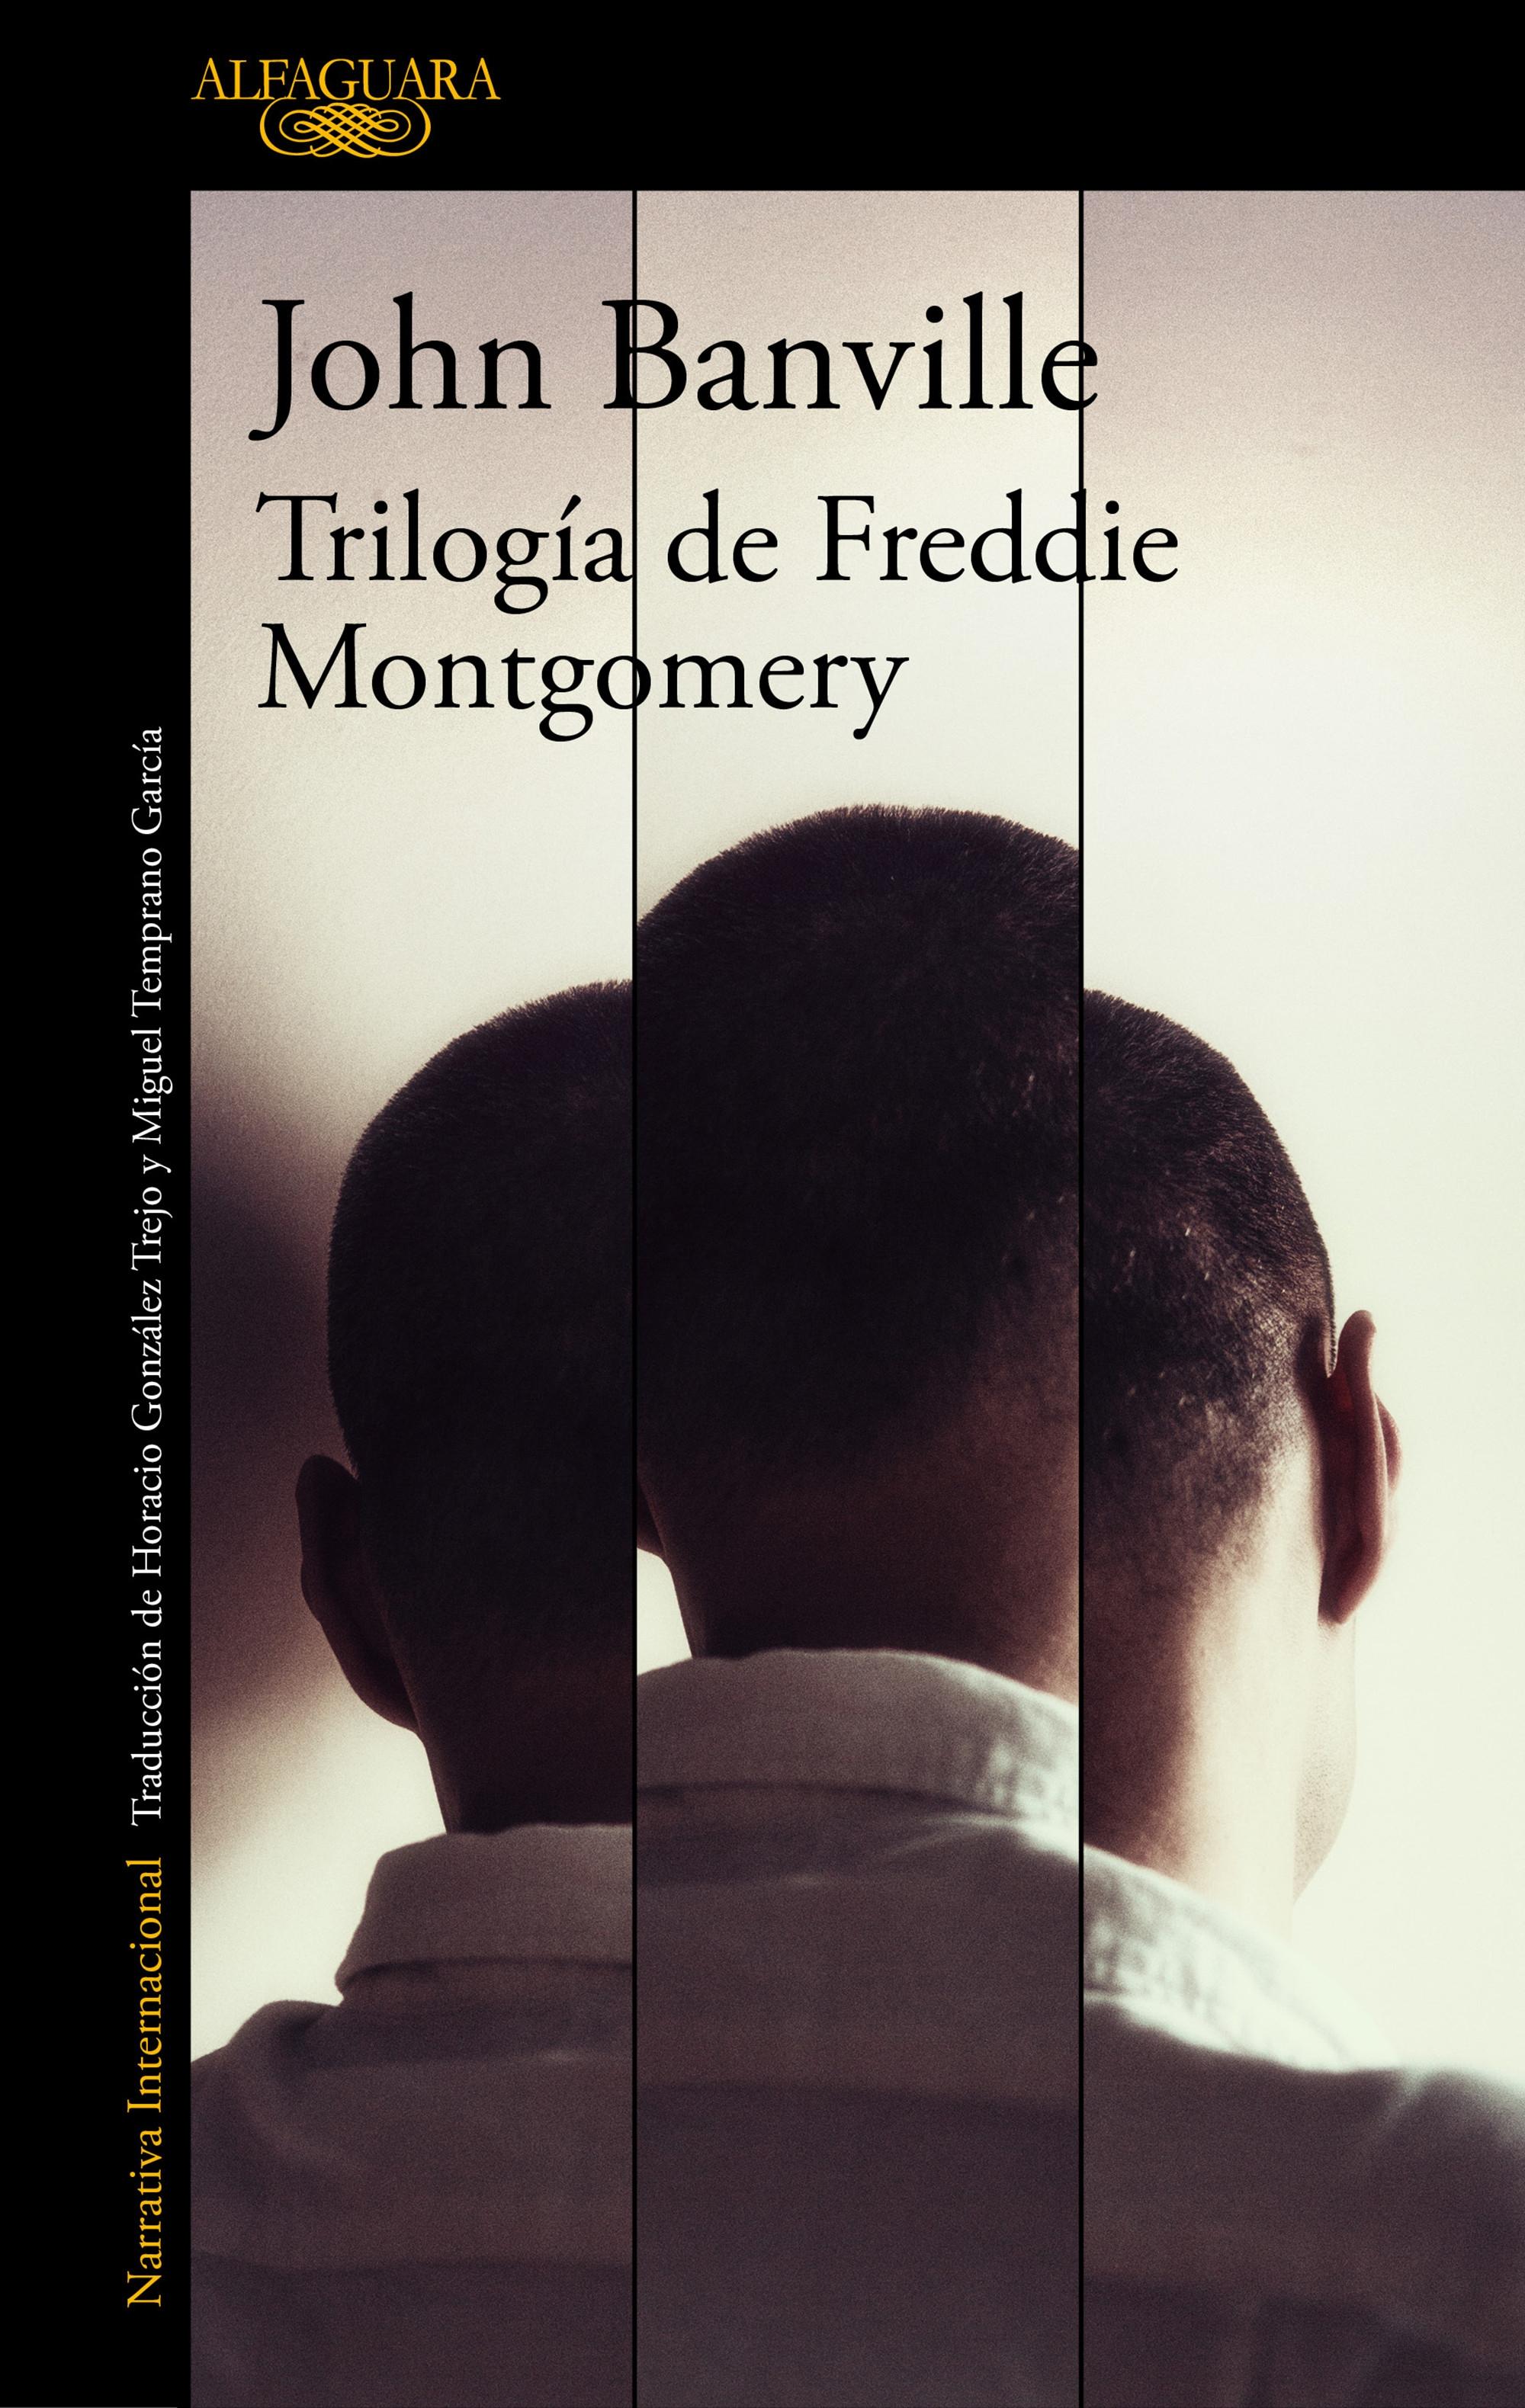 Trilogía de Freddie Montgomery "El libro de las pruebas / Fantasmas / Atenea"